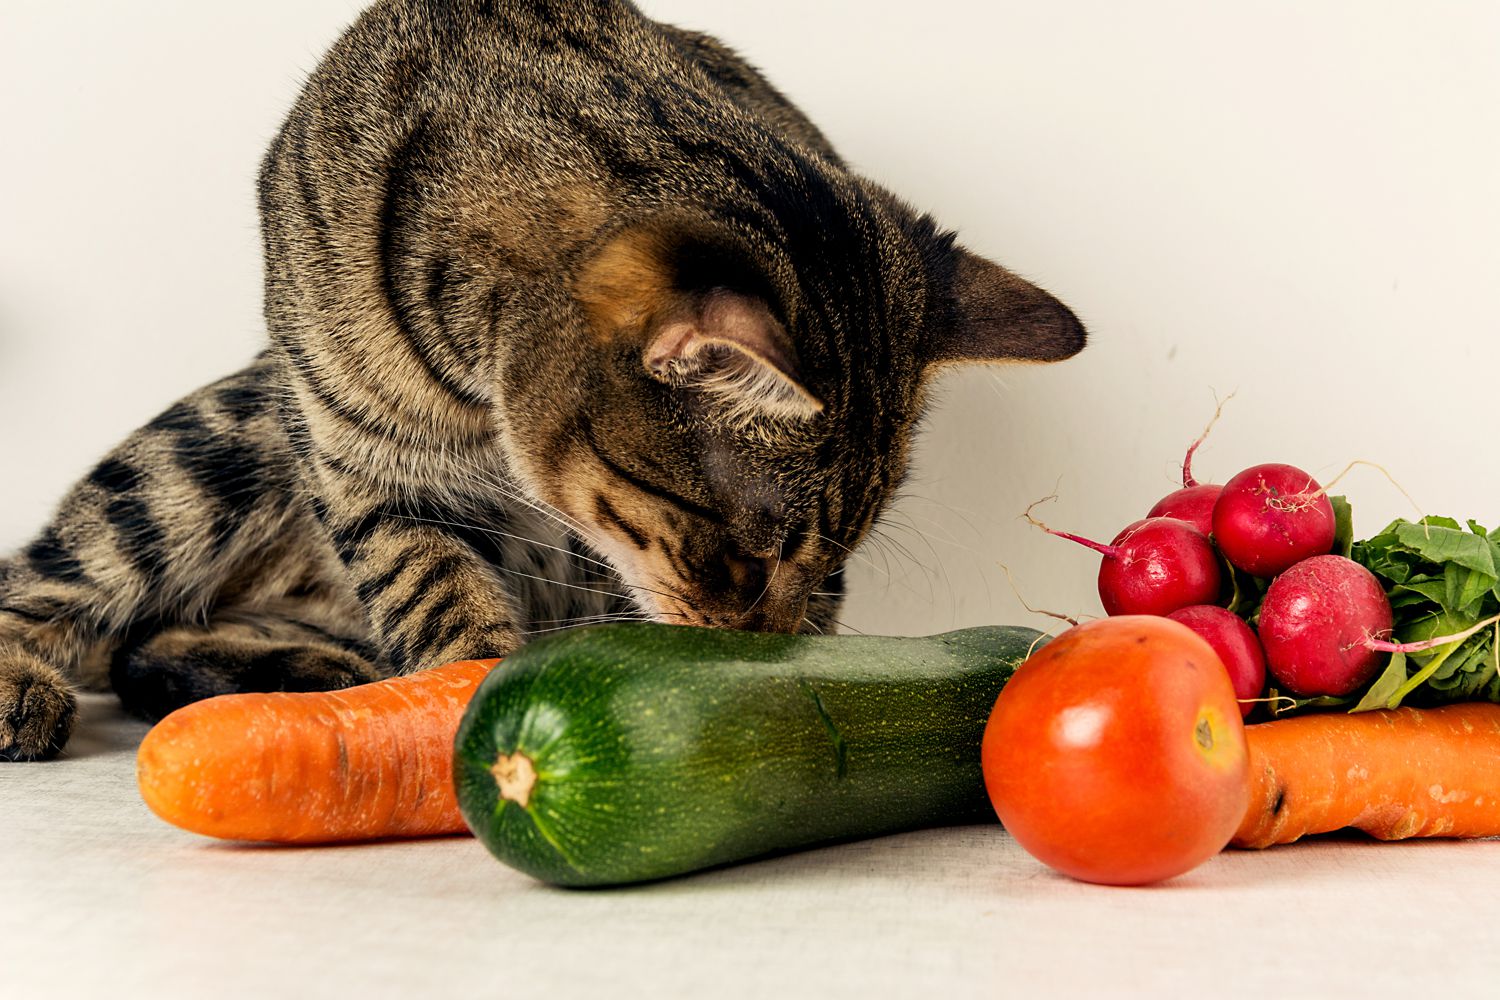 Verdura per cani e gatti: le buone abitudini fin da piccoli